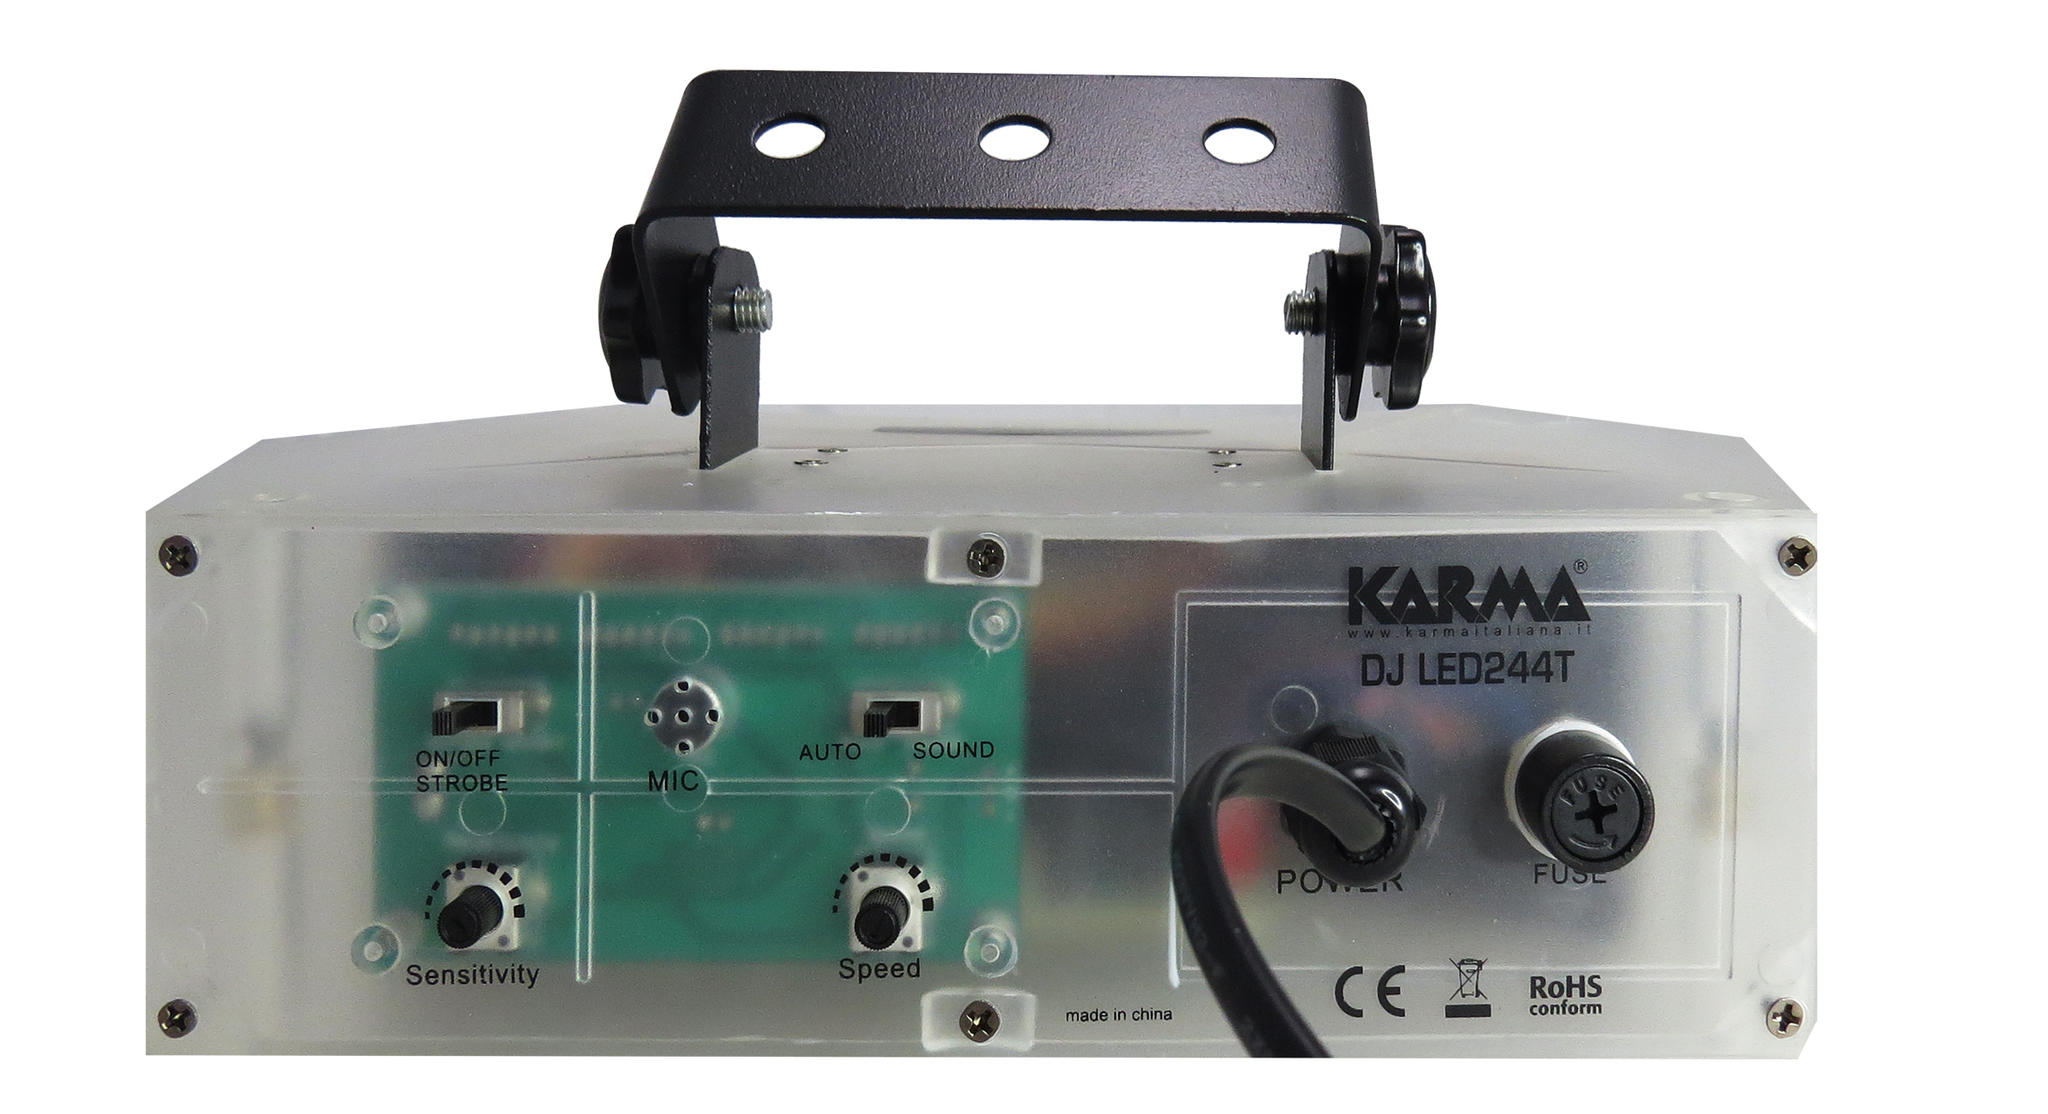 Karma DJ LED244T